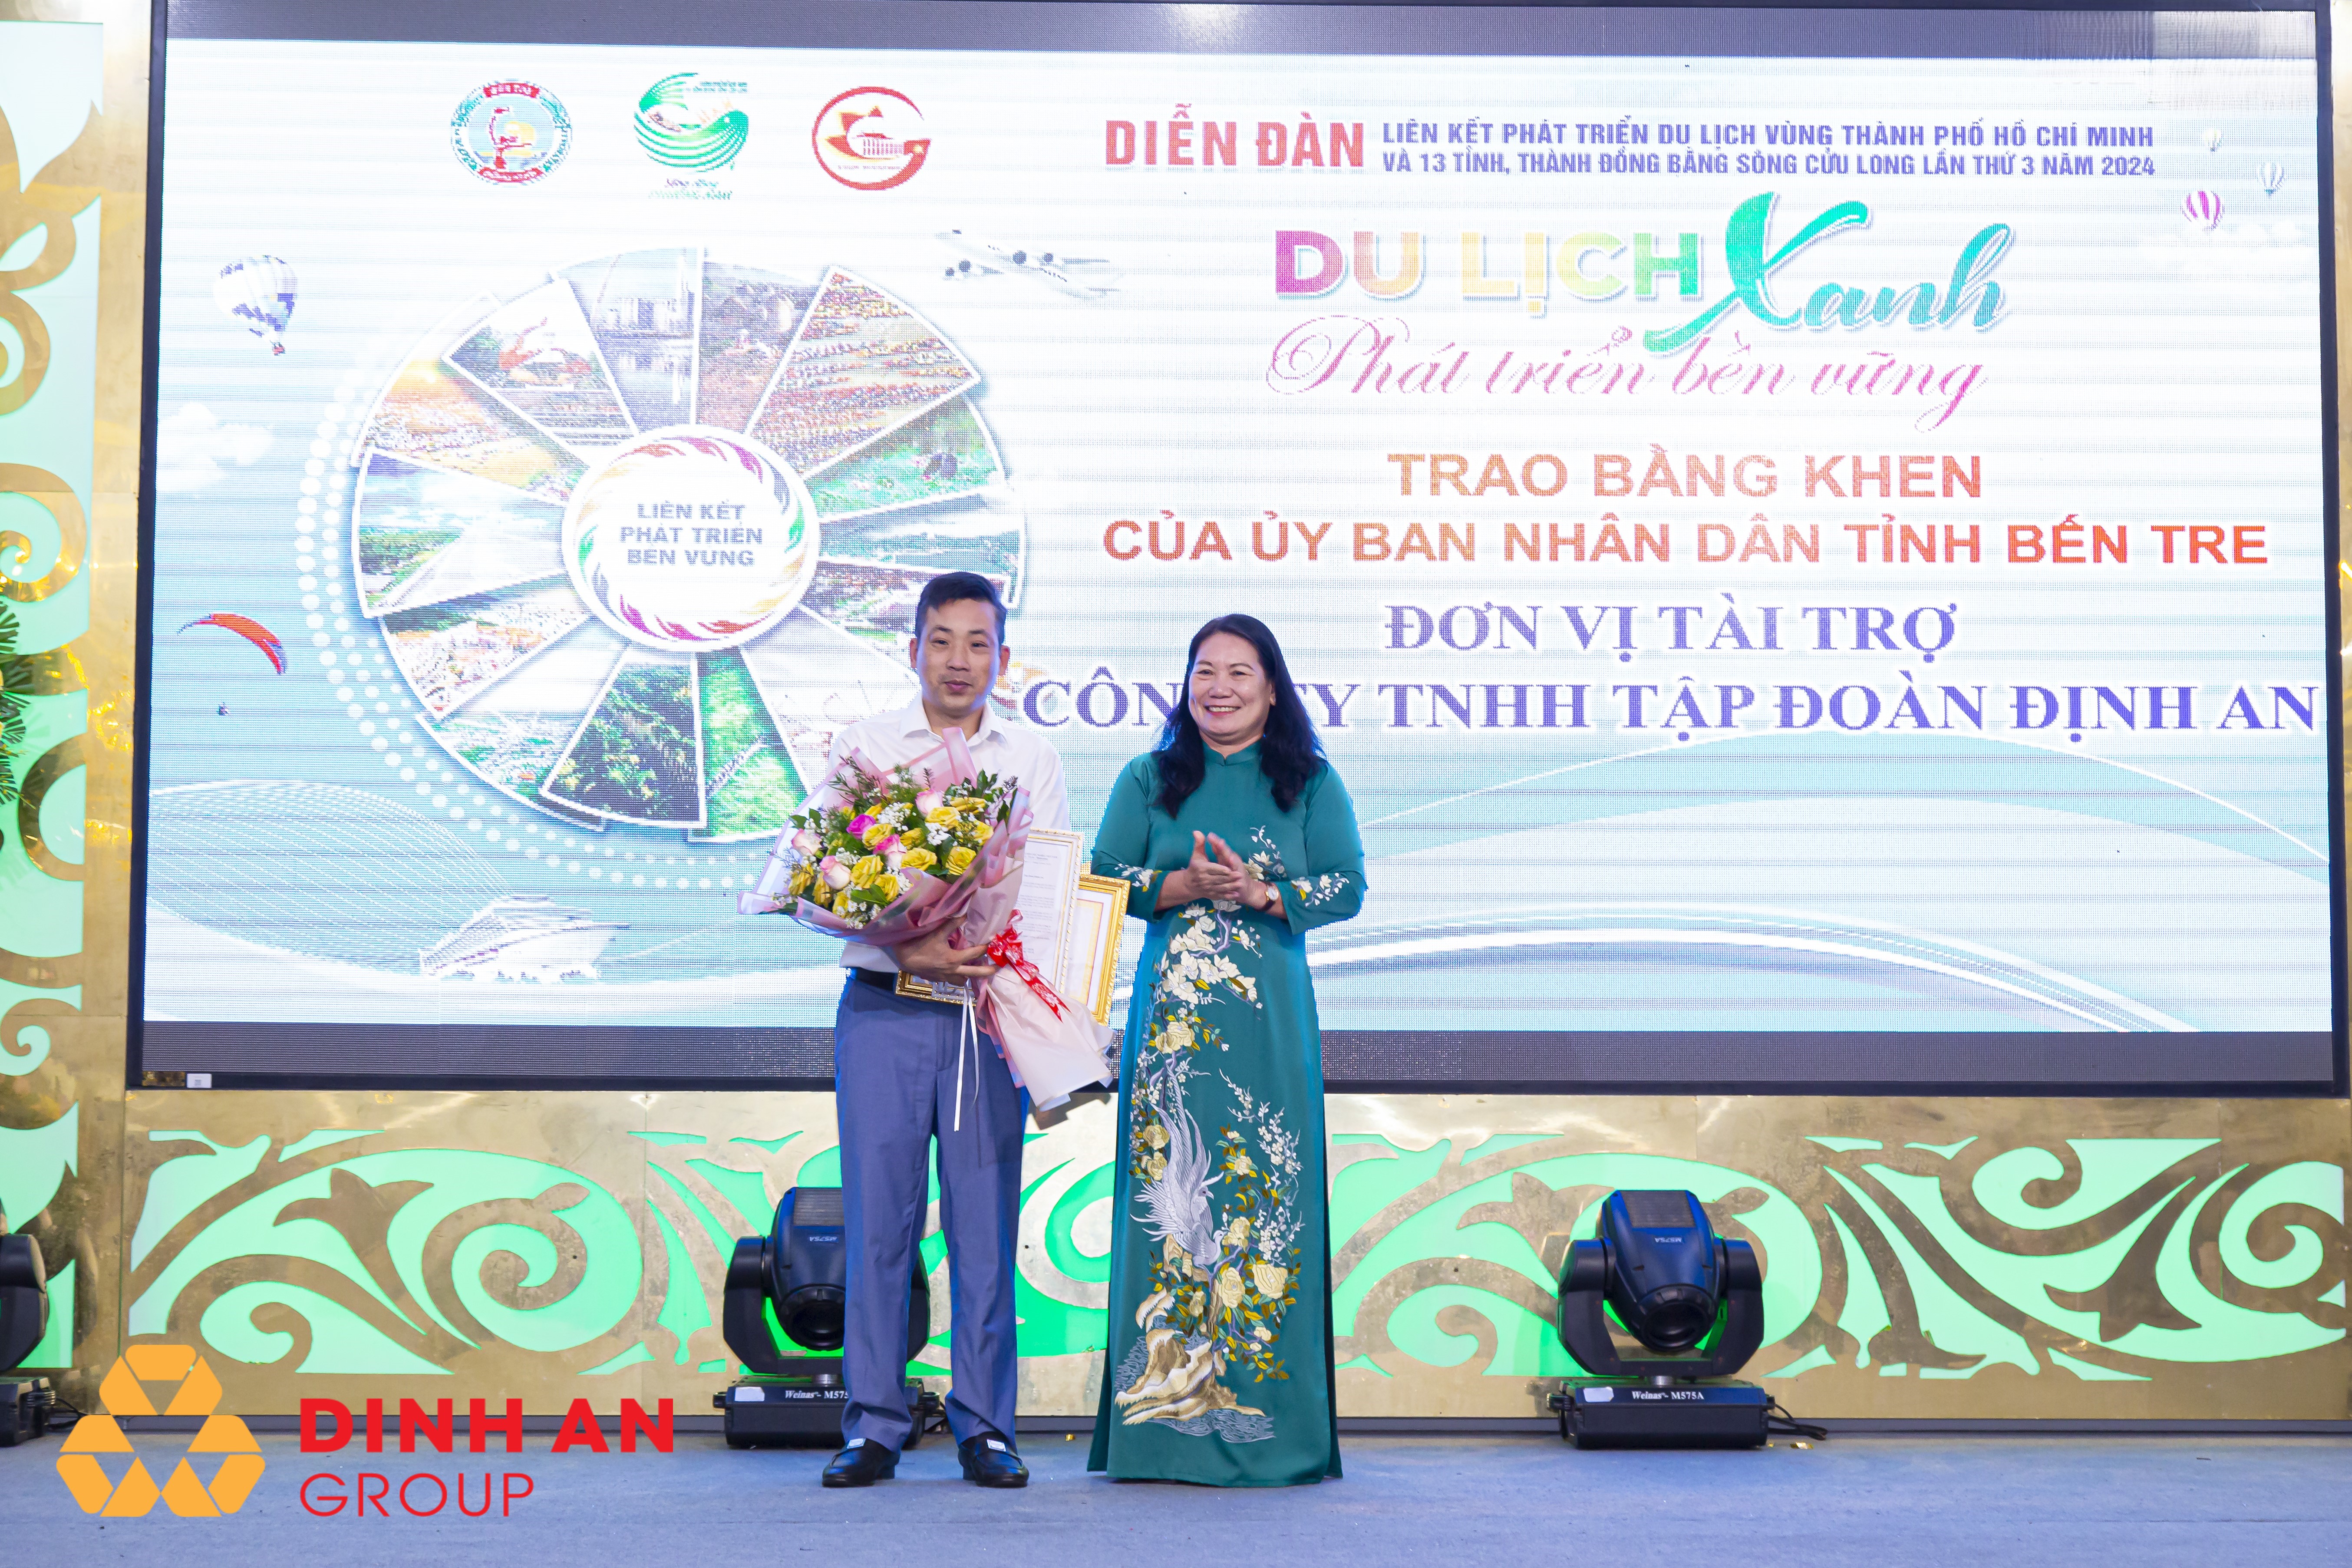 Tập đoàn Định An hân hạnh tài trợ chương trình: Liên kết phát triển du lịch TP.Hồ Chí Minh và 13 tỉnh, thành ĐBSCL lần thứ 3 năm 2024